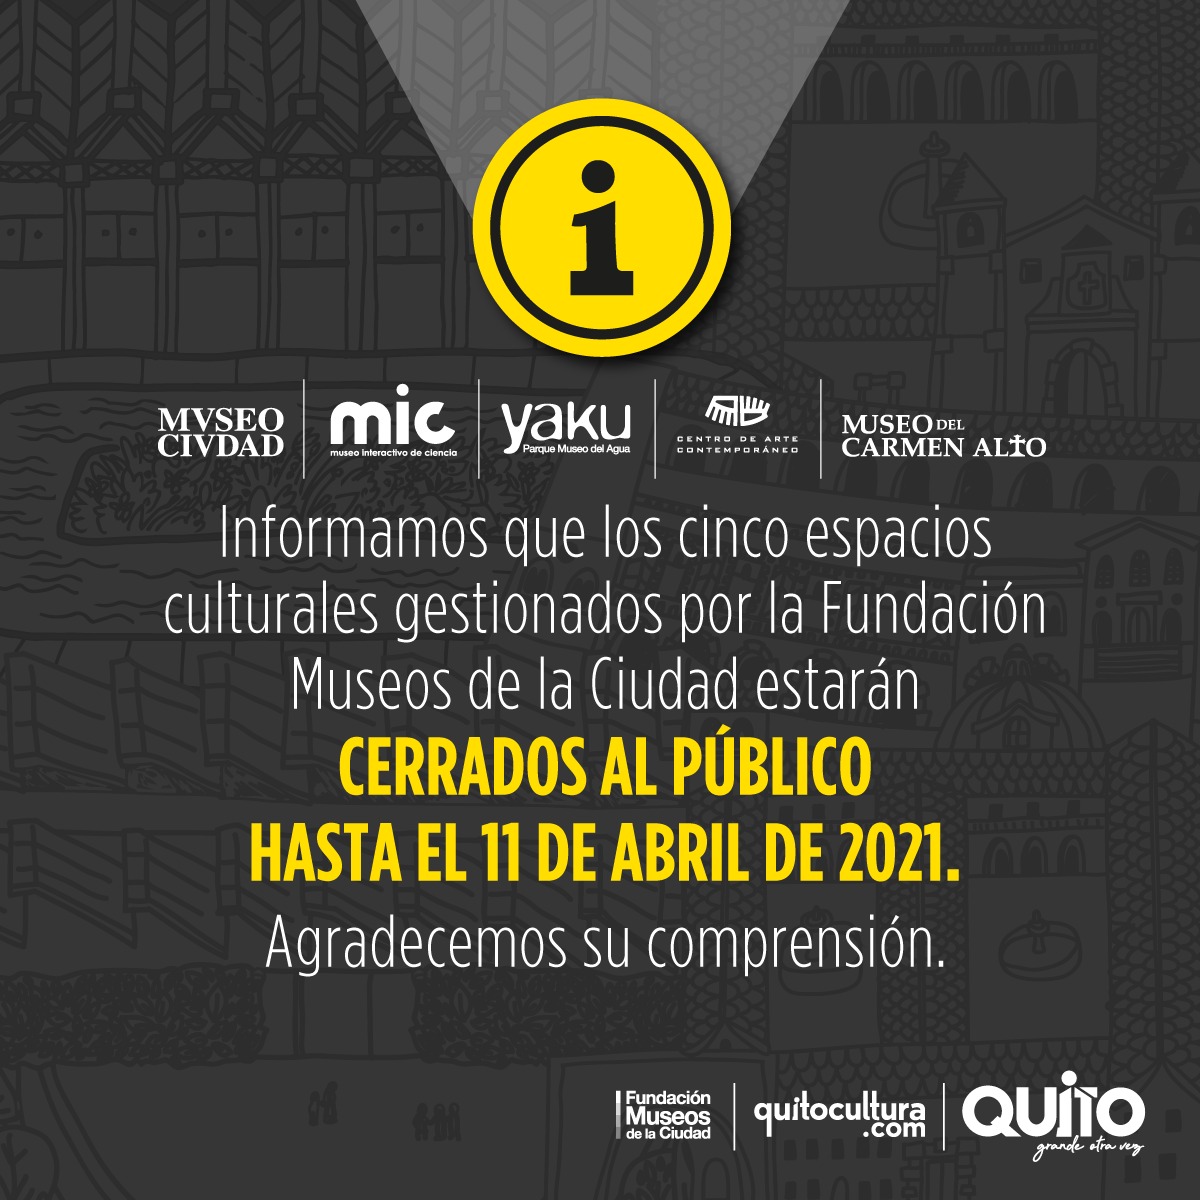 Los museos de Quito cerrarán sus puertas al público hasta el 11 de abril